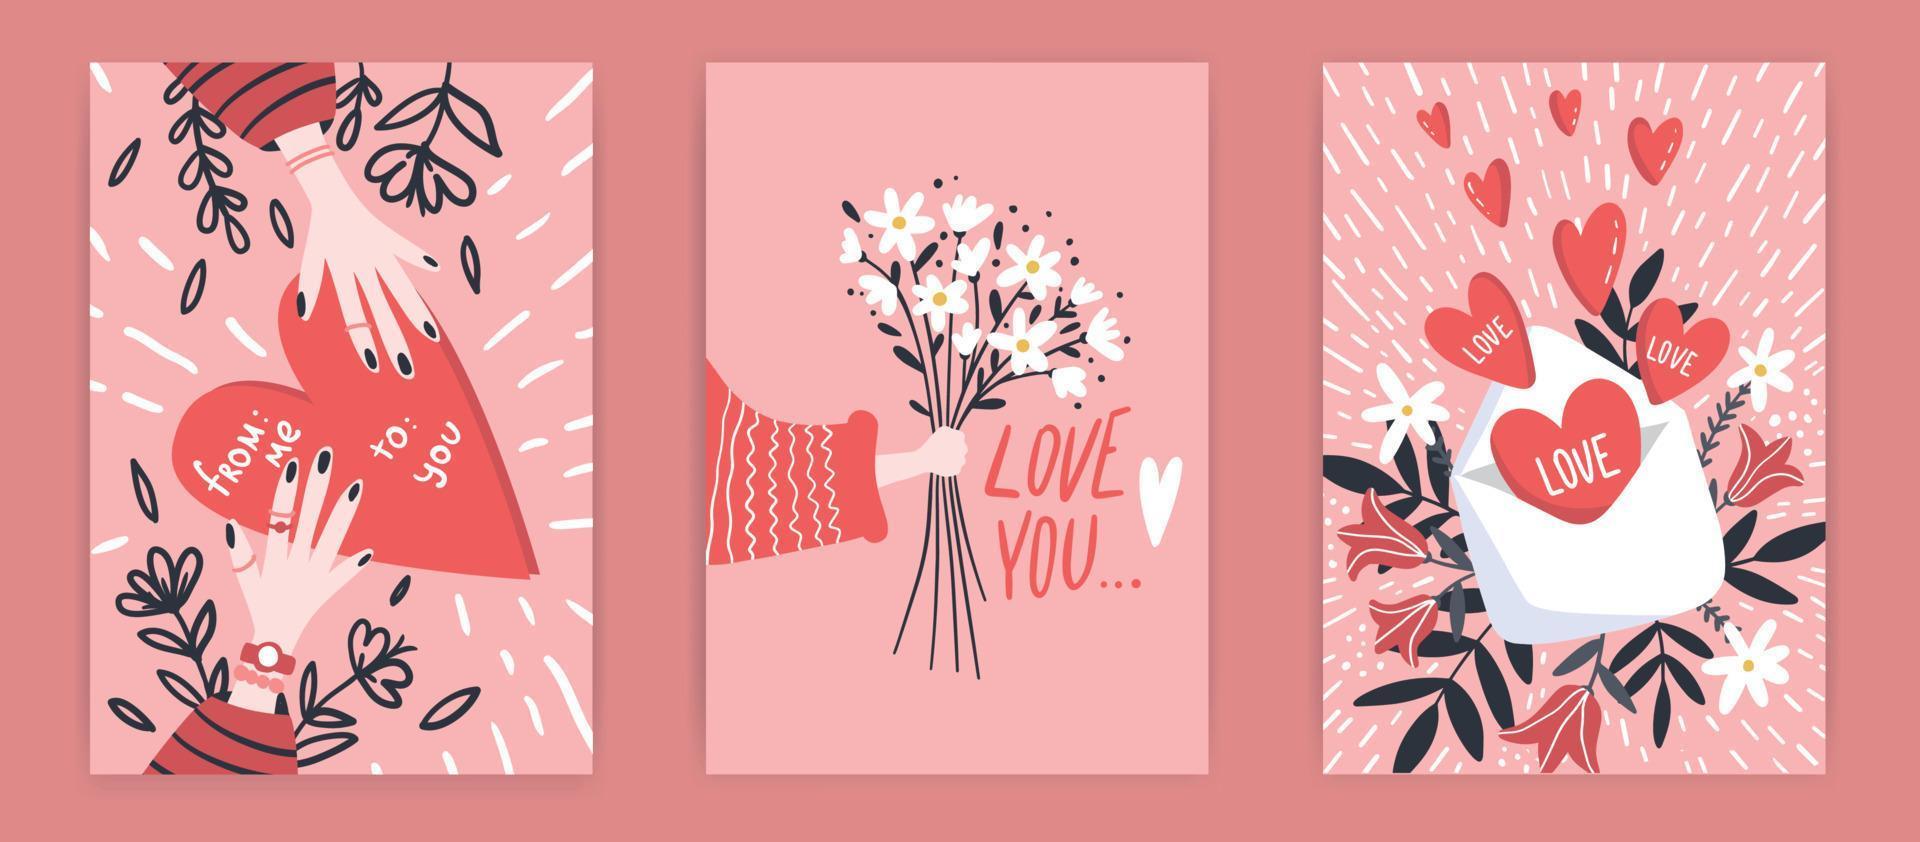 conjunto romántico de tarjetas de felicitación para el día de san valentín. colección de vectores con letras de pincel y elementos escritos a mano. etiquetas de color rosa, rosa y blanco para su diseño e invitación